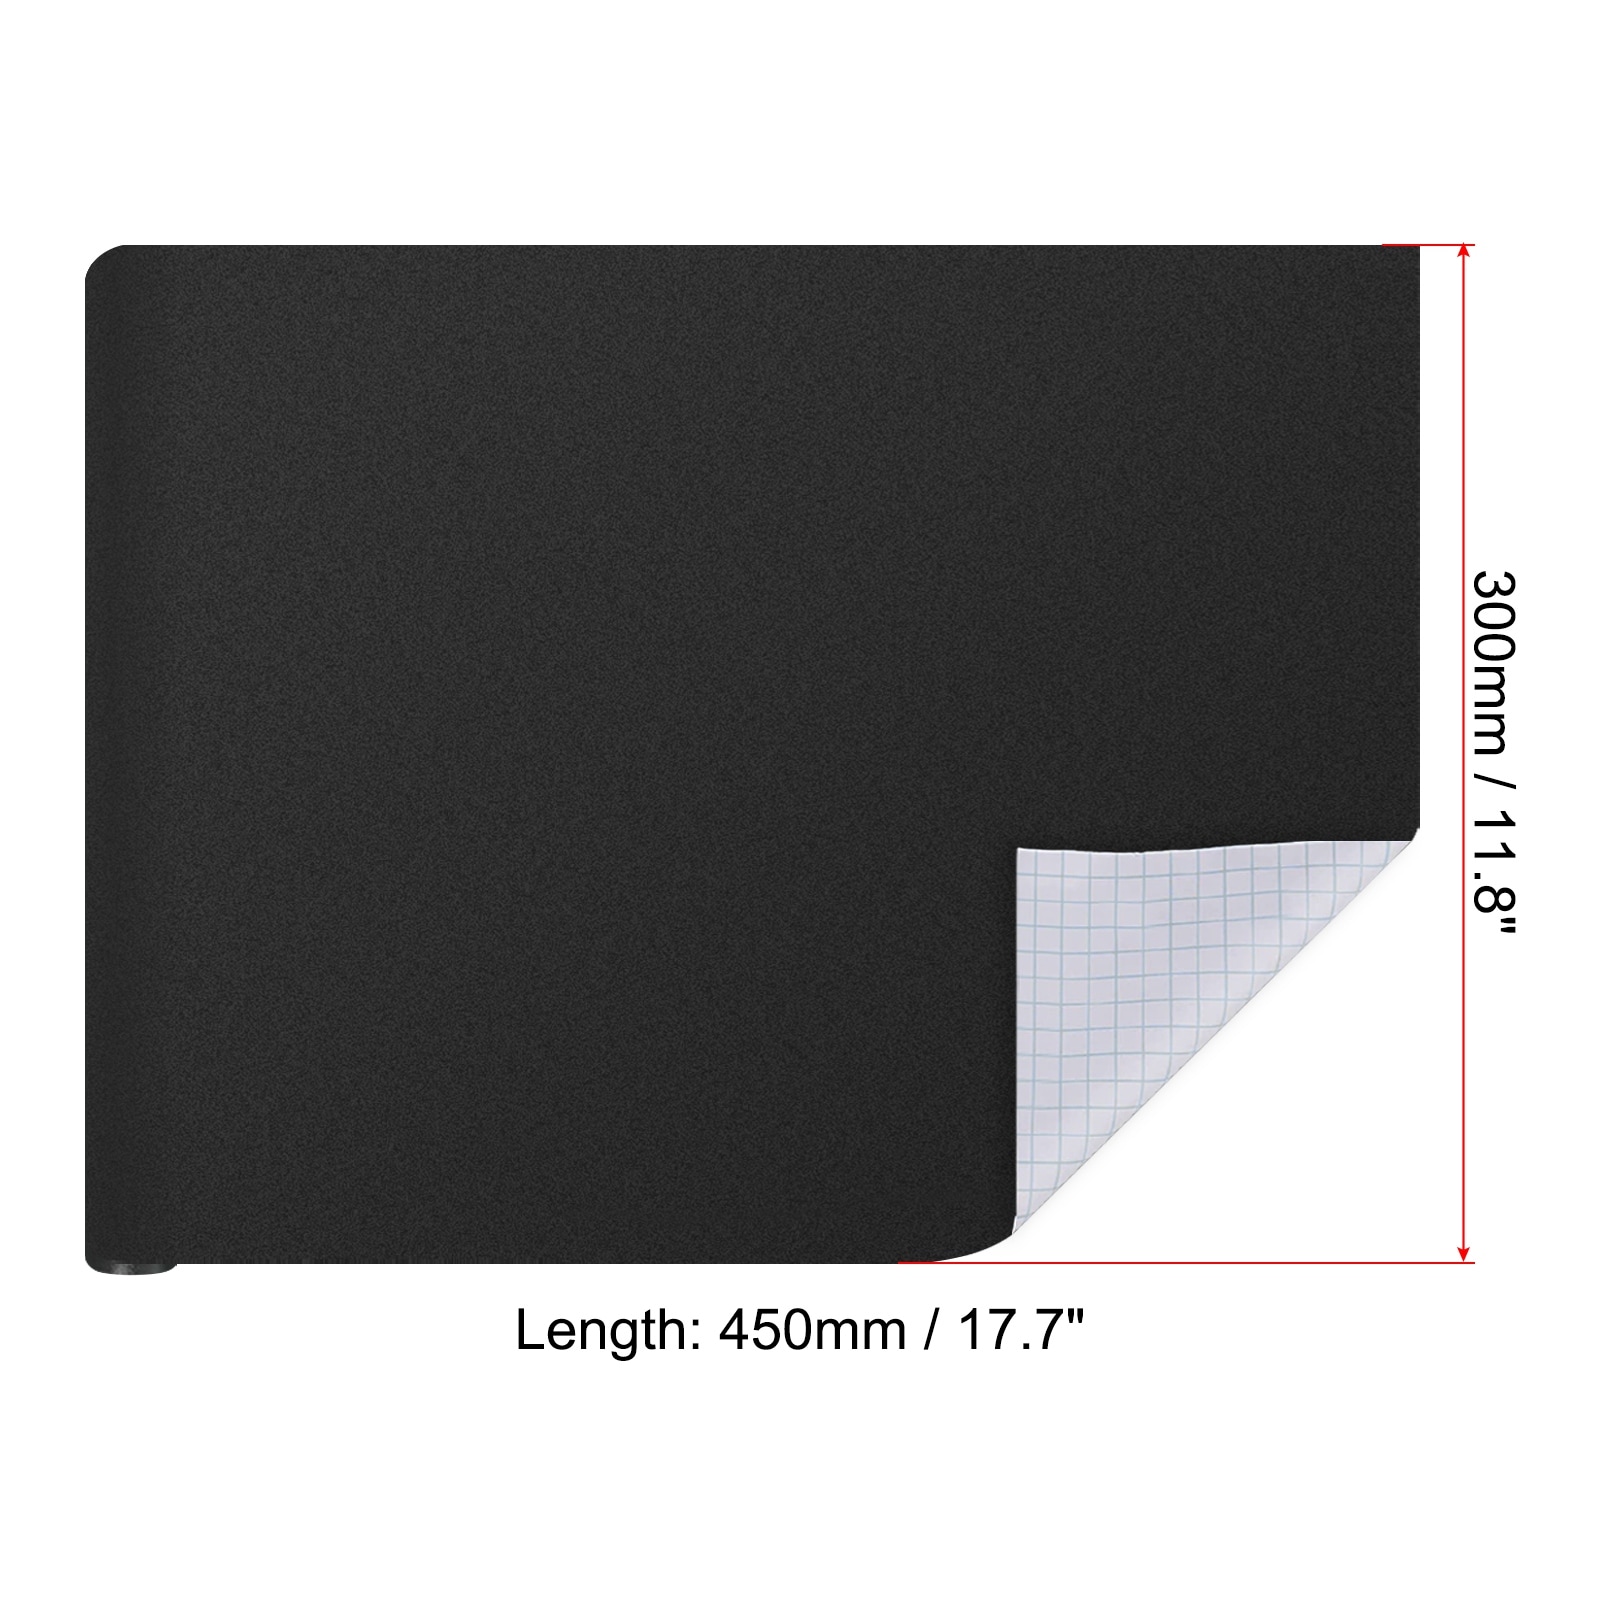 Blackboard Wall Sticker Roll Dry Erase Sticker Board 2pcs - Bed